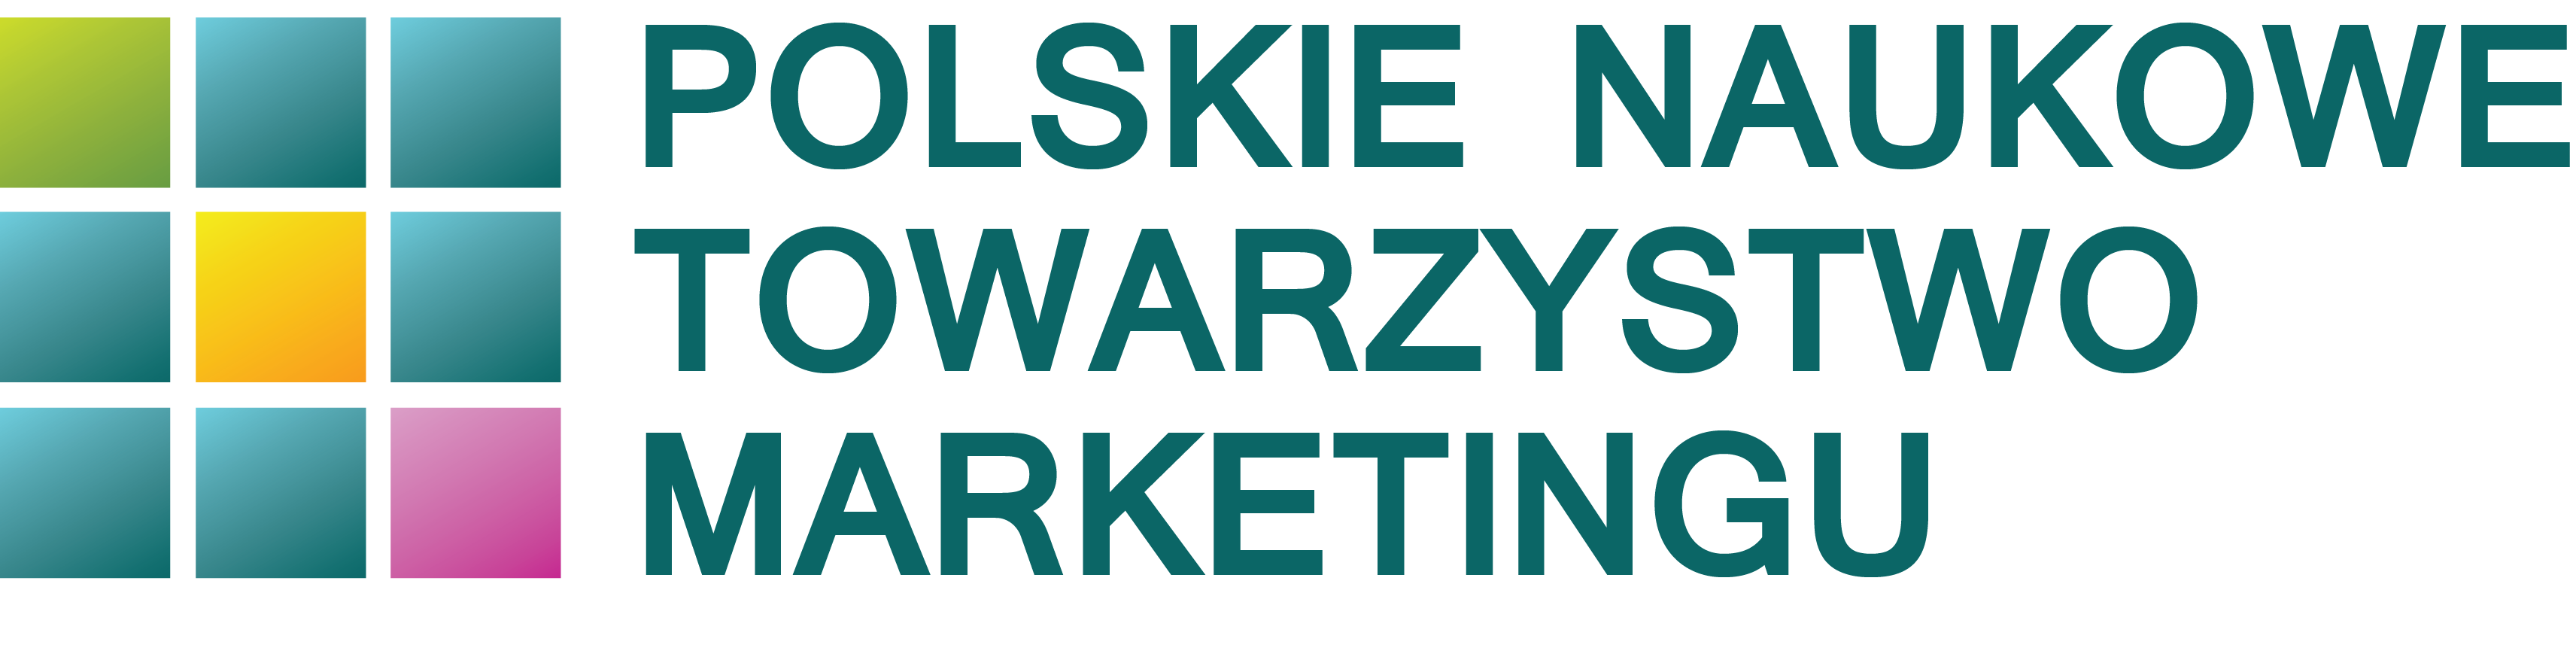 Polskie Naukowe Towarzystwo Marketingu